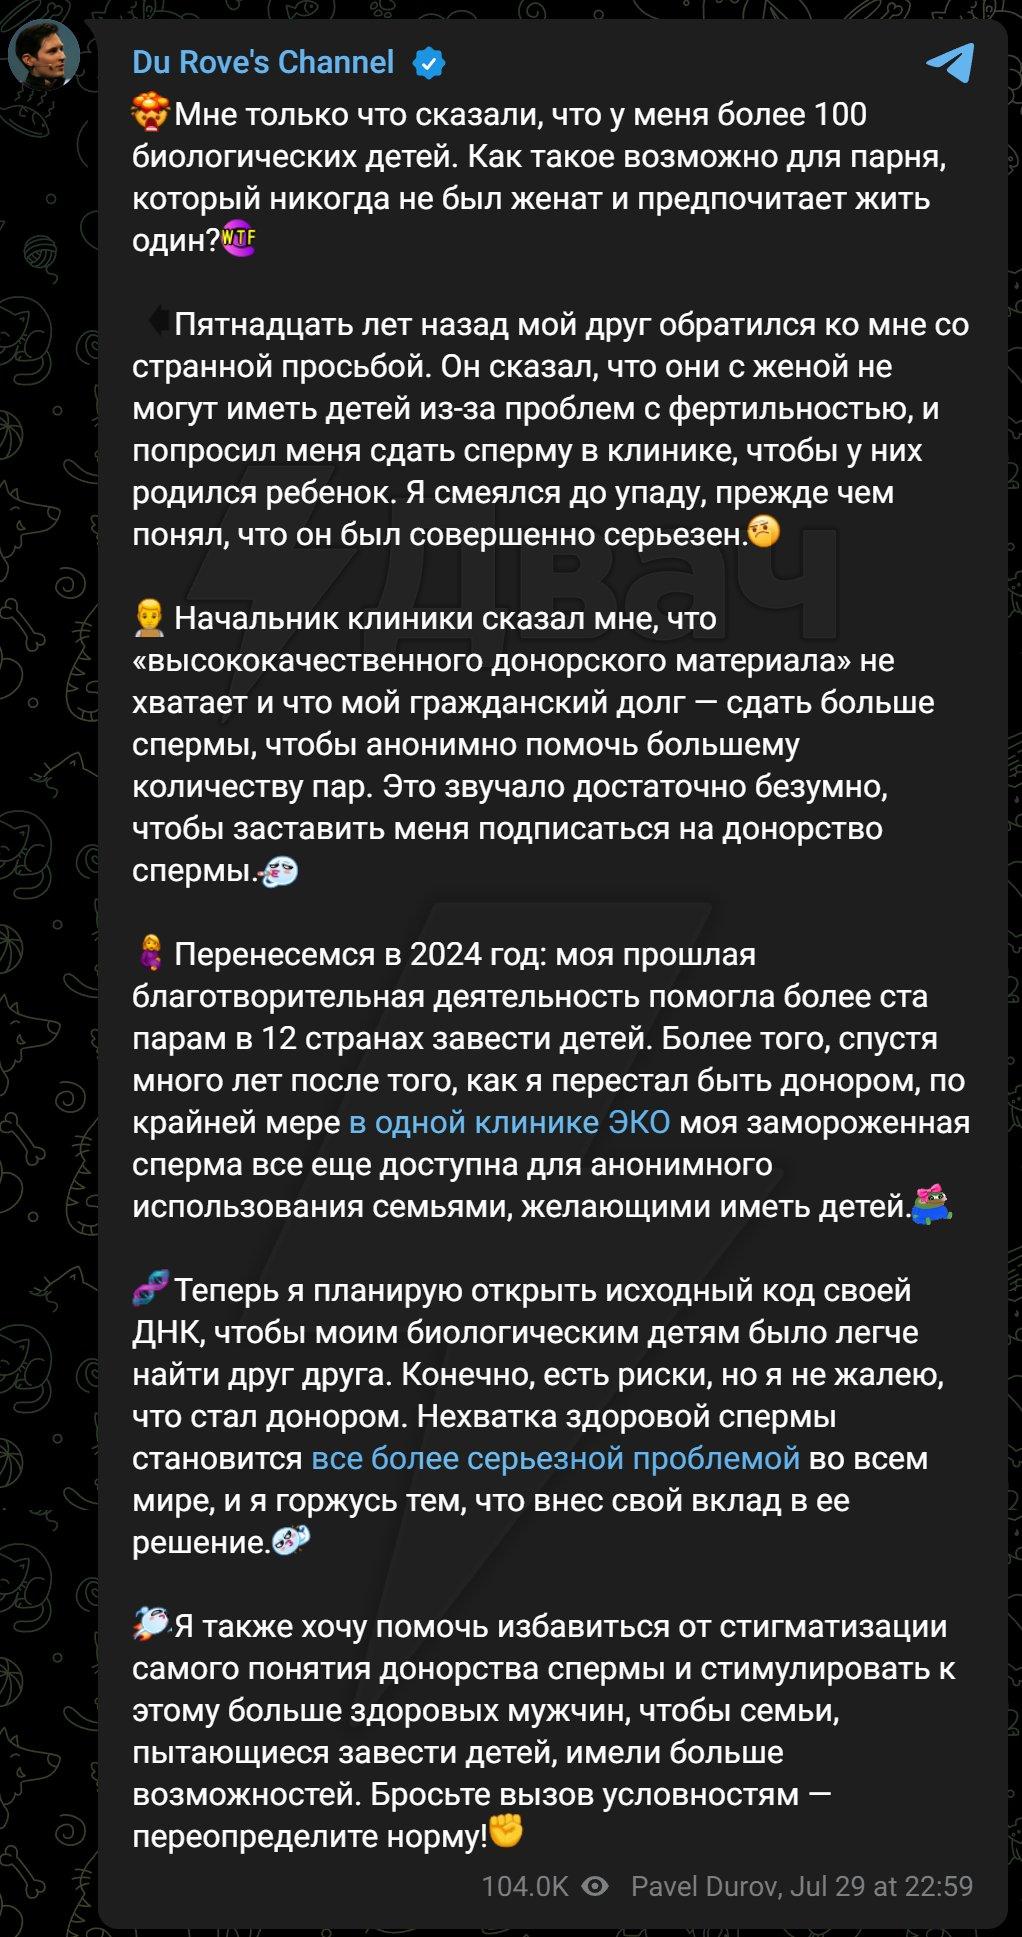 Лучшие шутки и мемы про 100 детей Павла Дурова